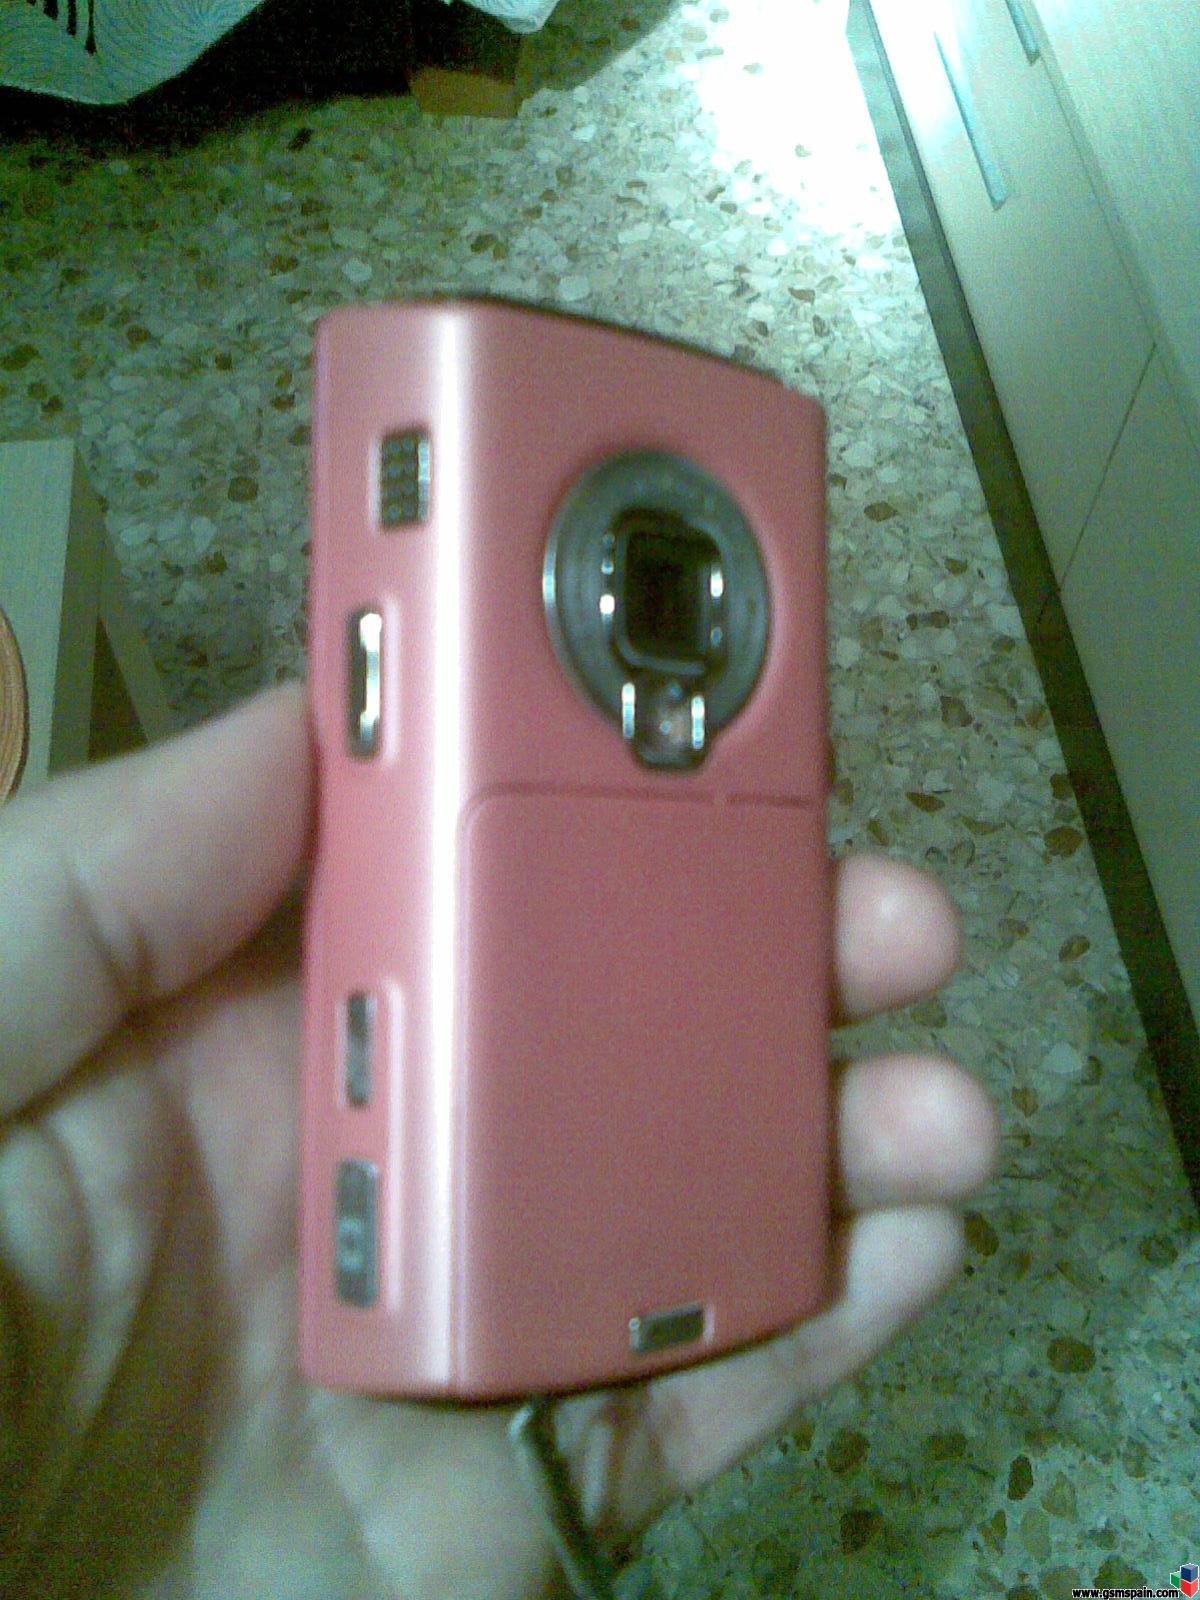 Nokia N95 8gigas Rosaaaa!!!!!!!!